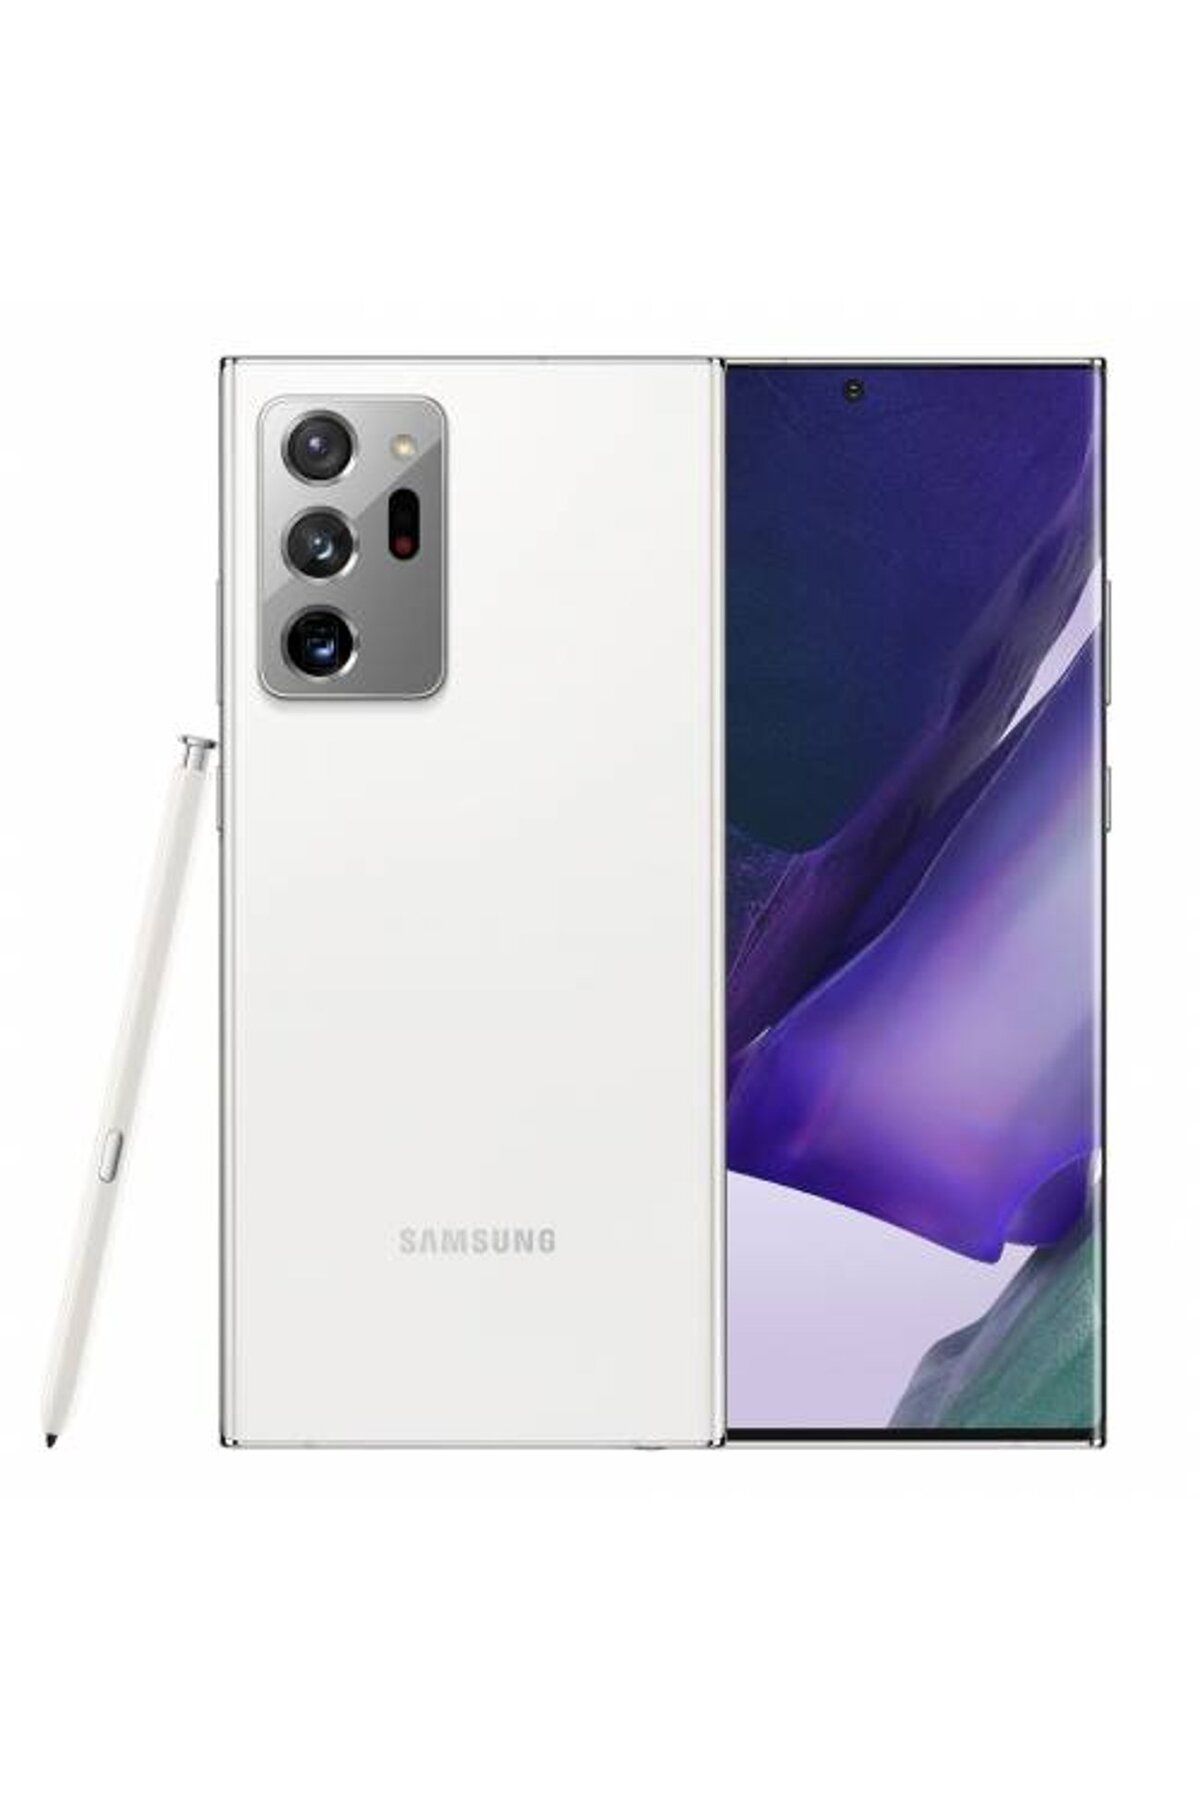 Samsung Yenilenmiş Samsung Galaxy Note 20 Ultra 256GB Beyaz B Kalite